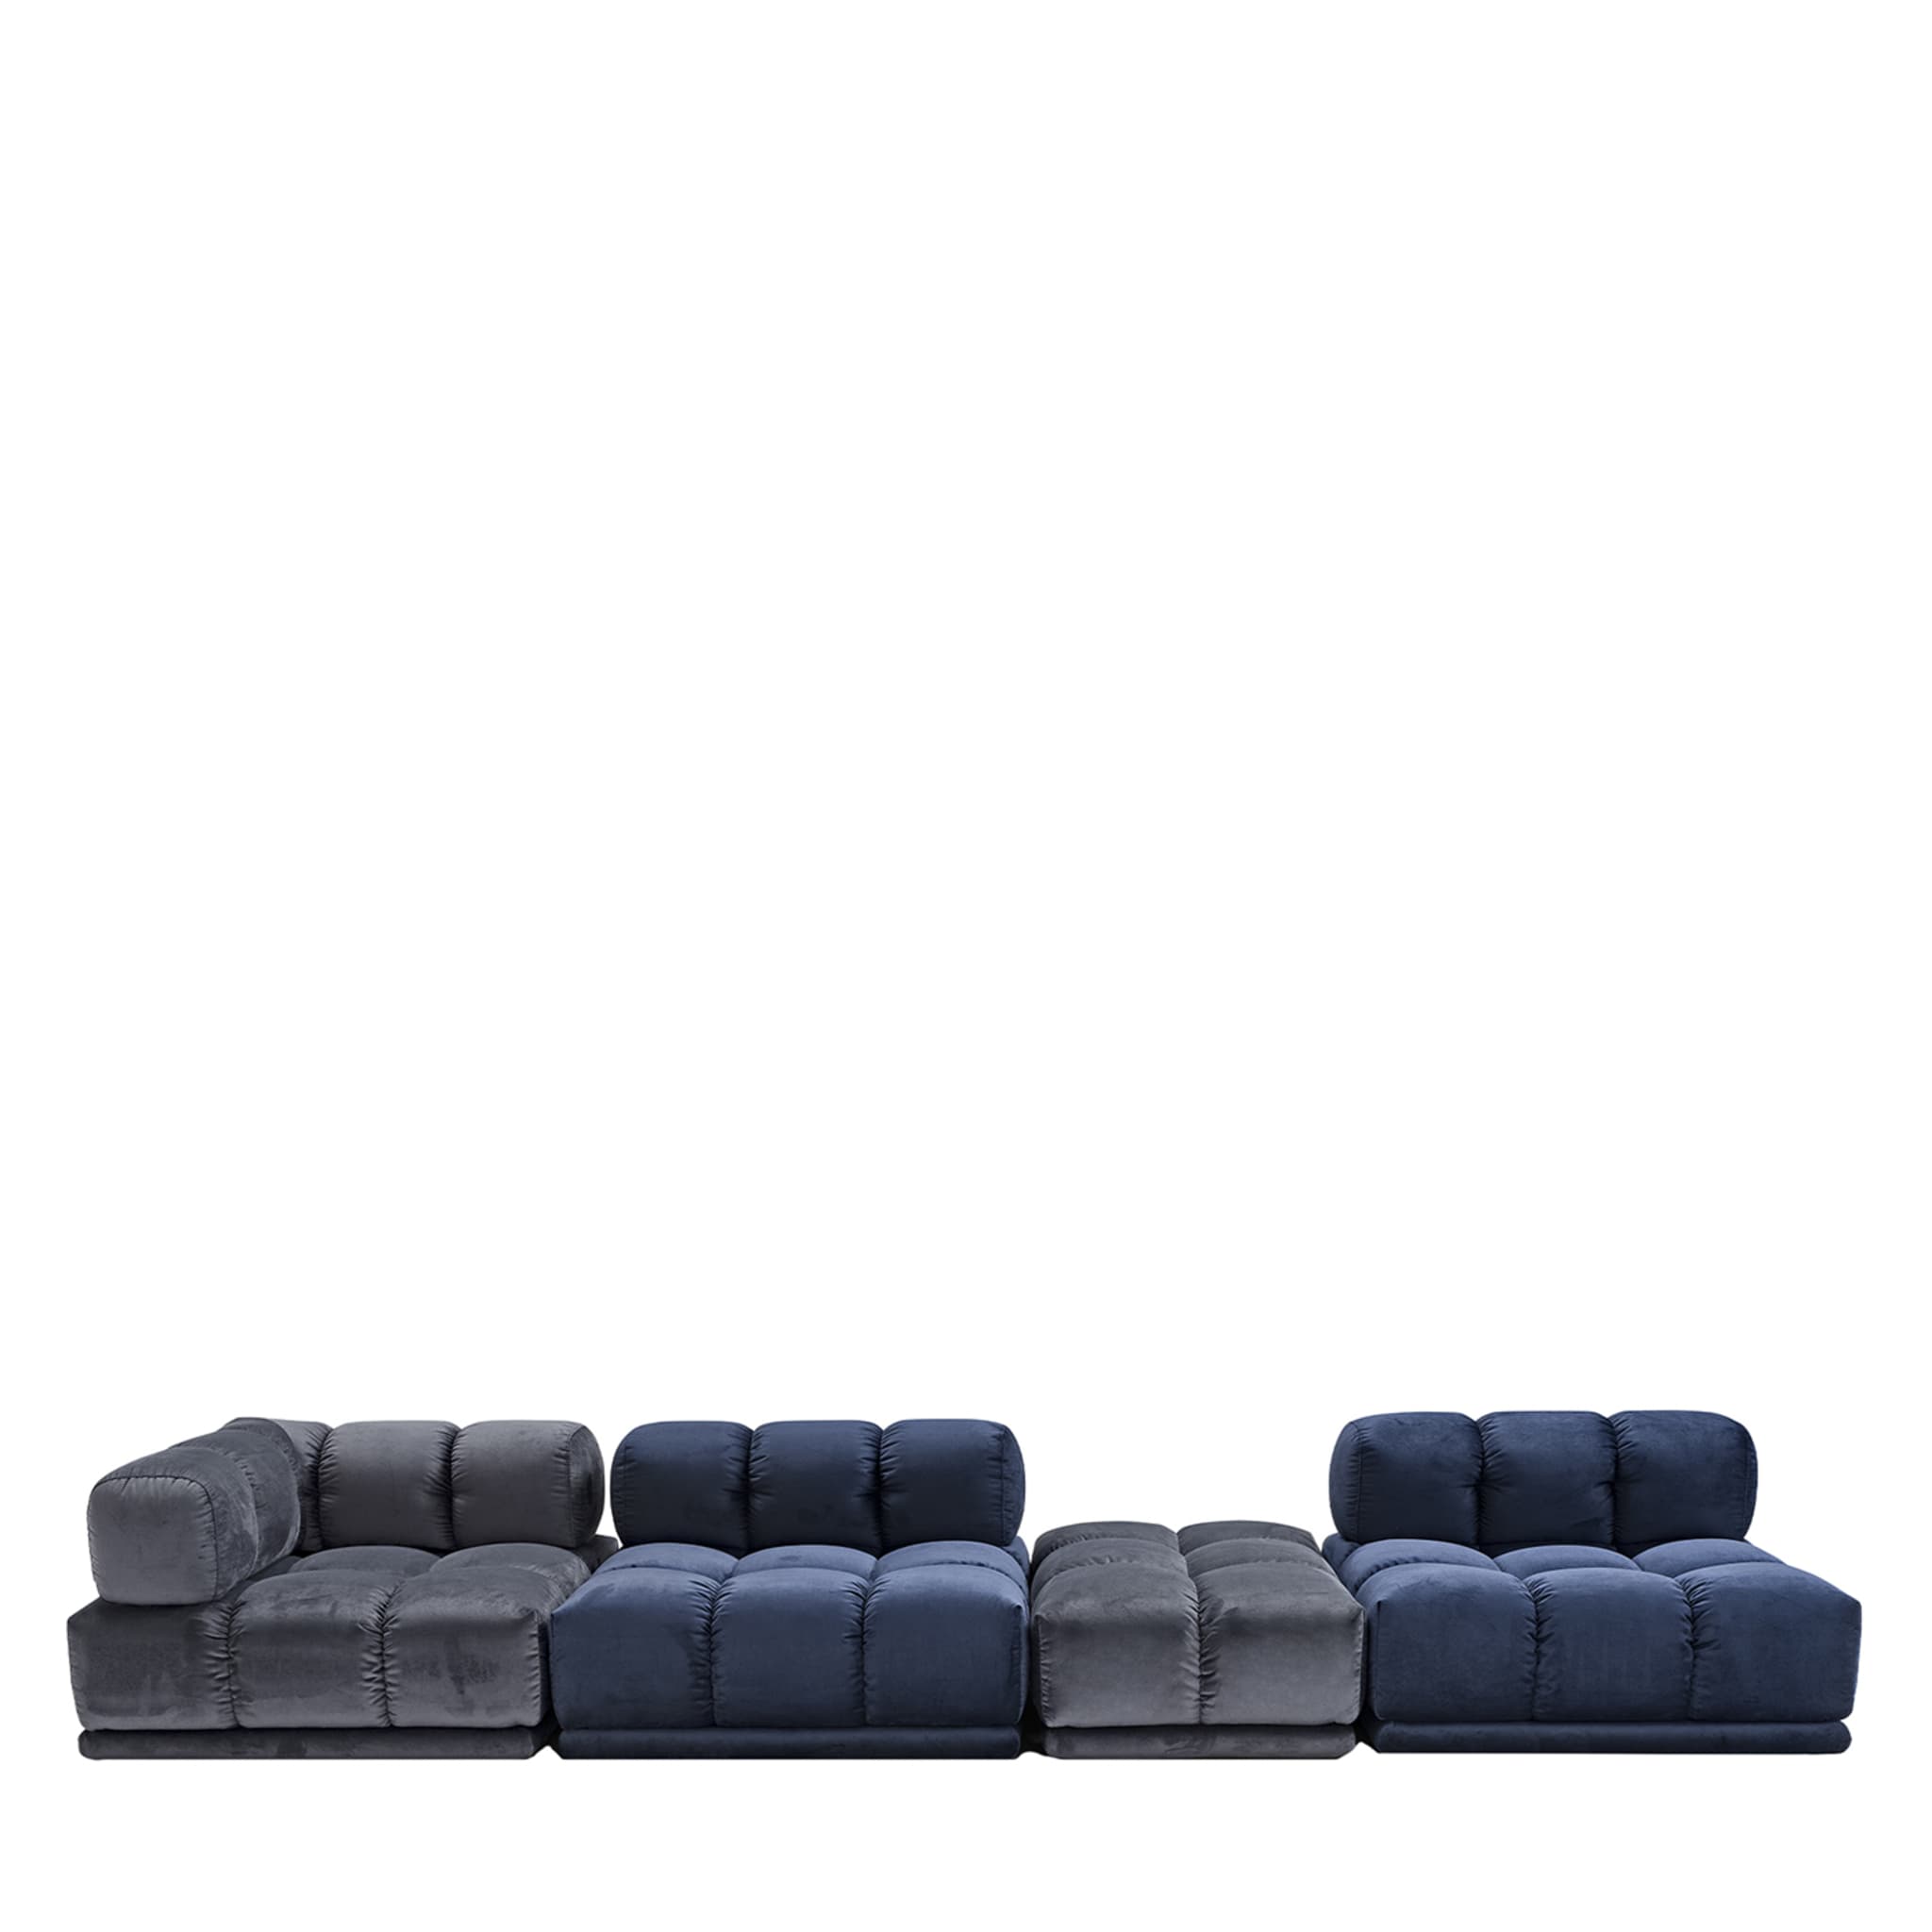 Sacai 4-Module Gray & Blue Sofa - Main view